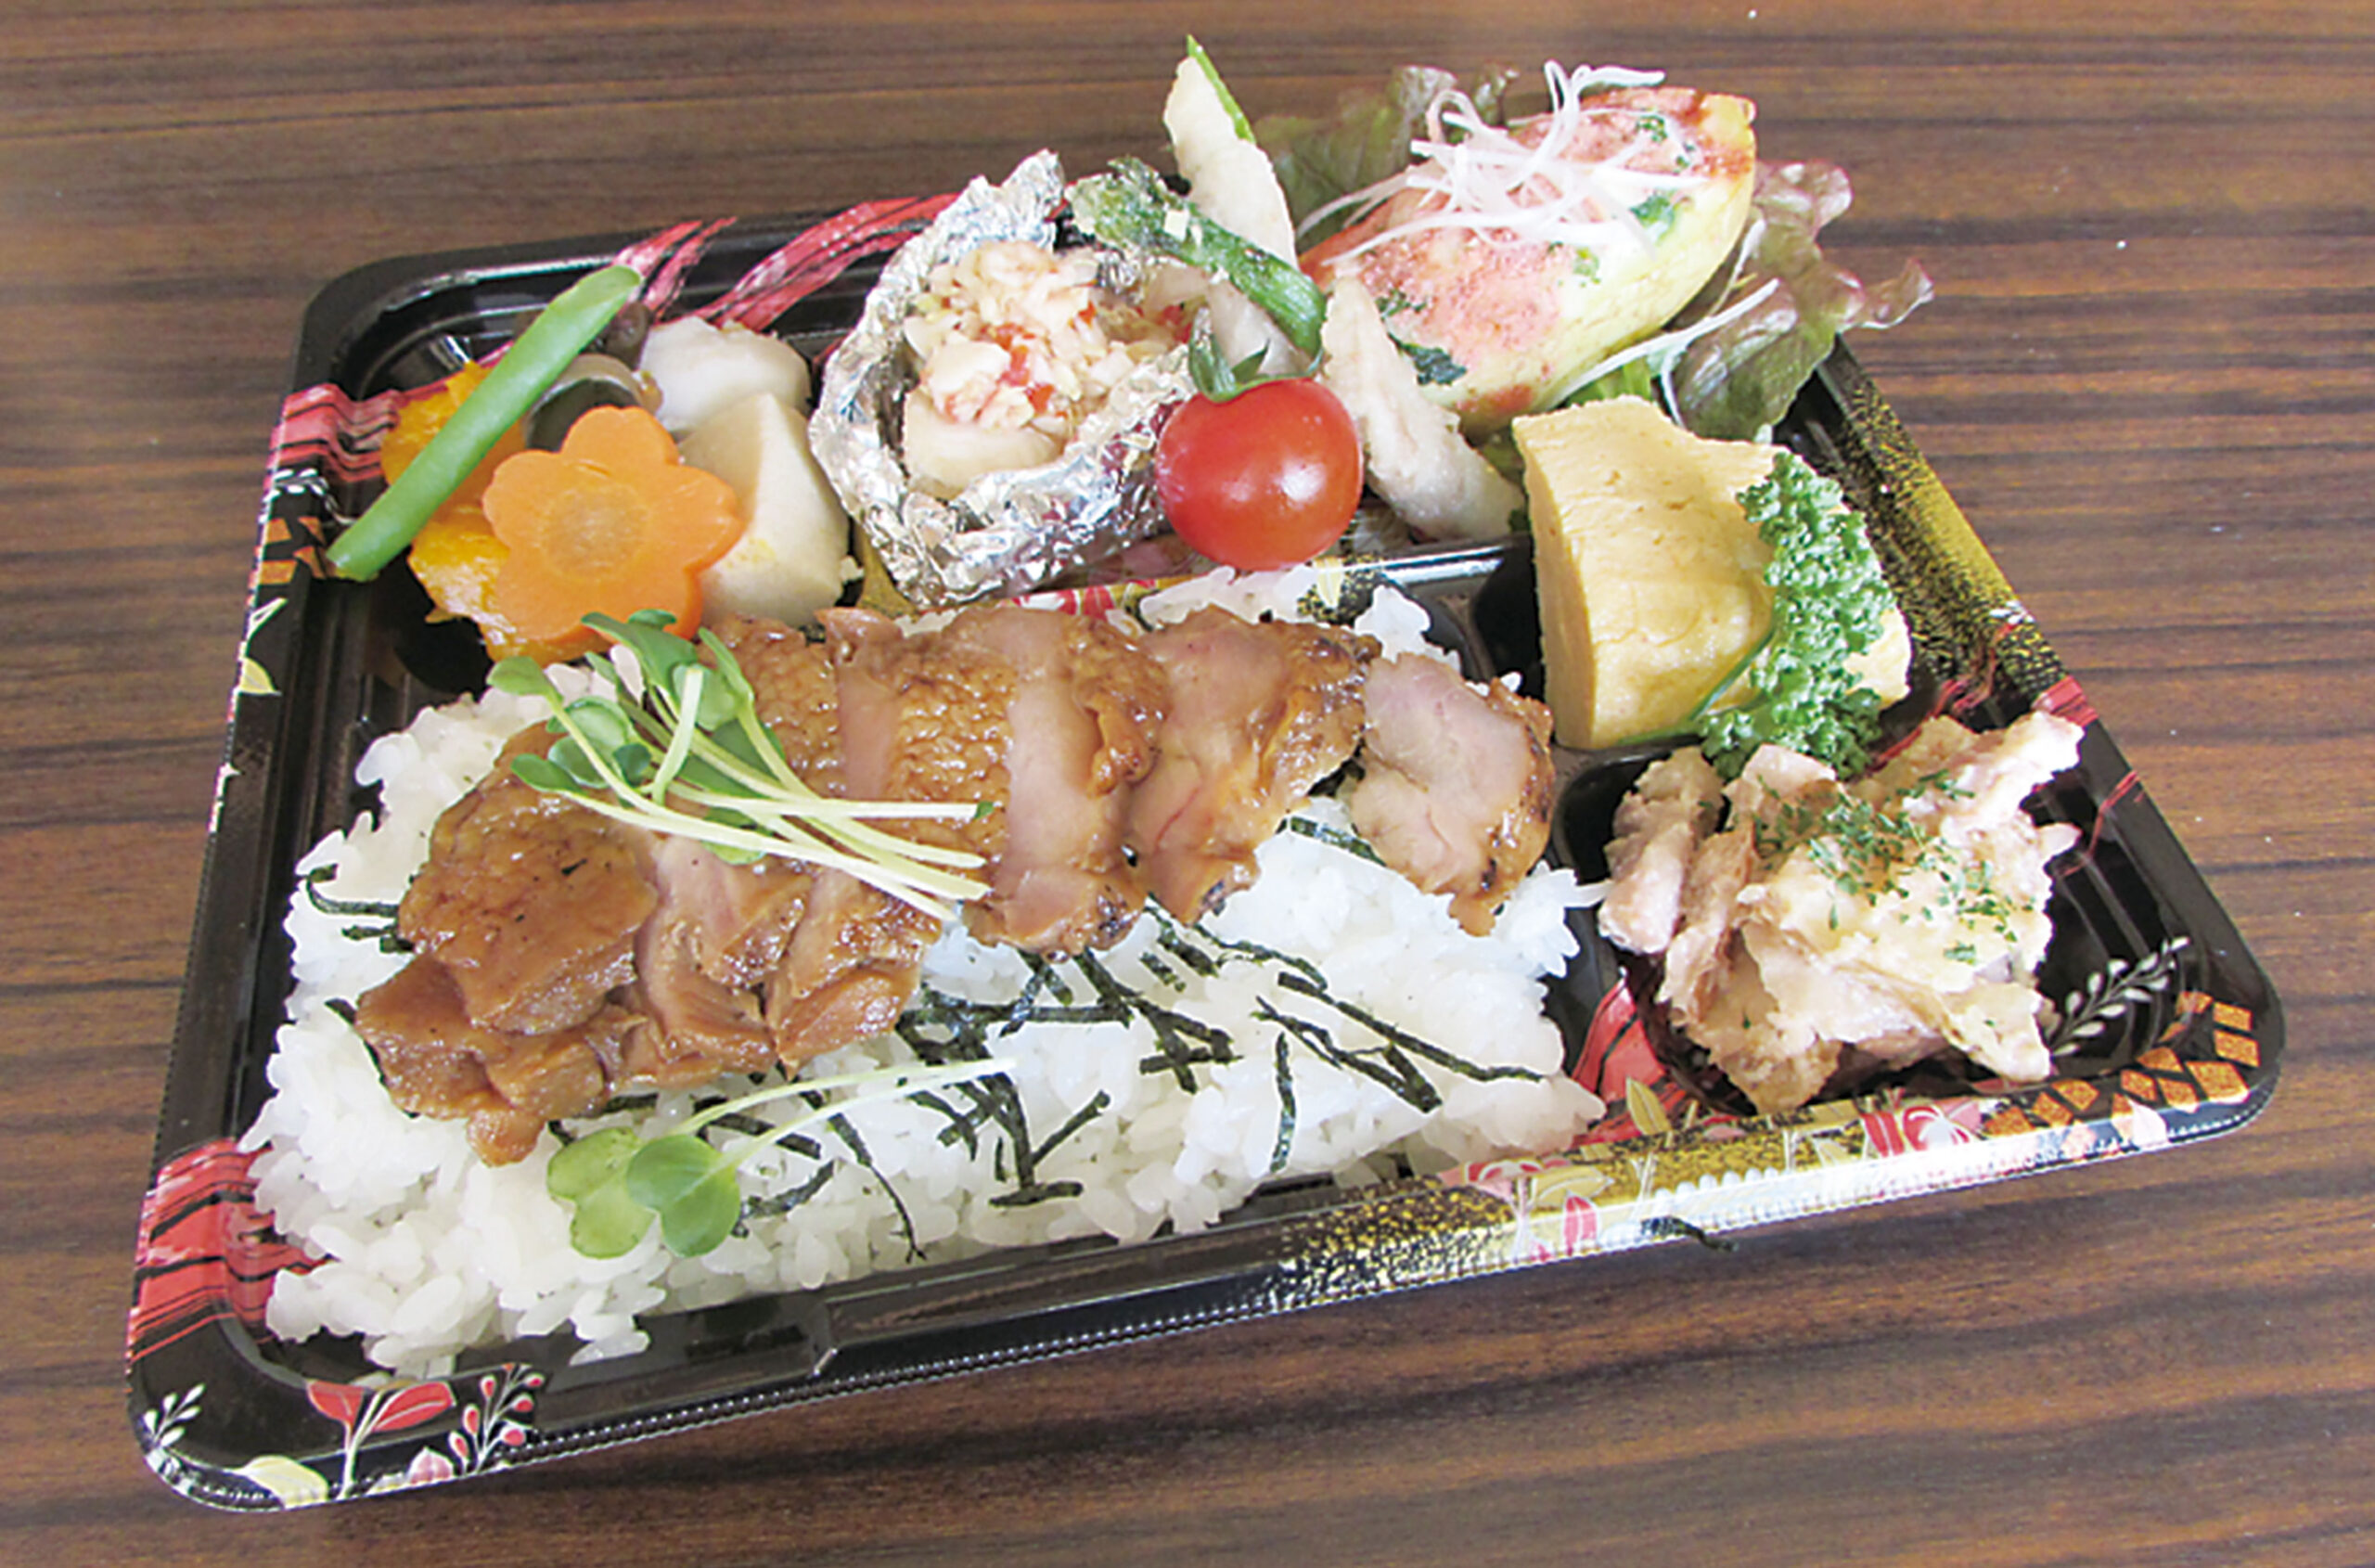 松永町の 食楽魚菜 壱歩 1000円と思えぬ豪華な行楽弁当 東川口町の店舗でも注文できます びんなび